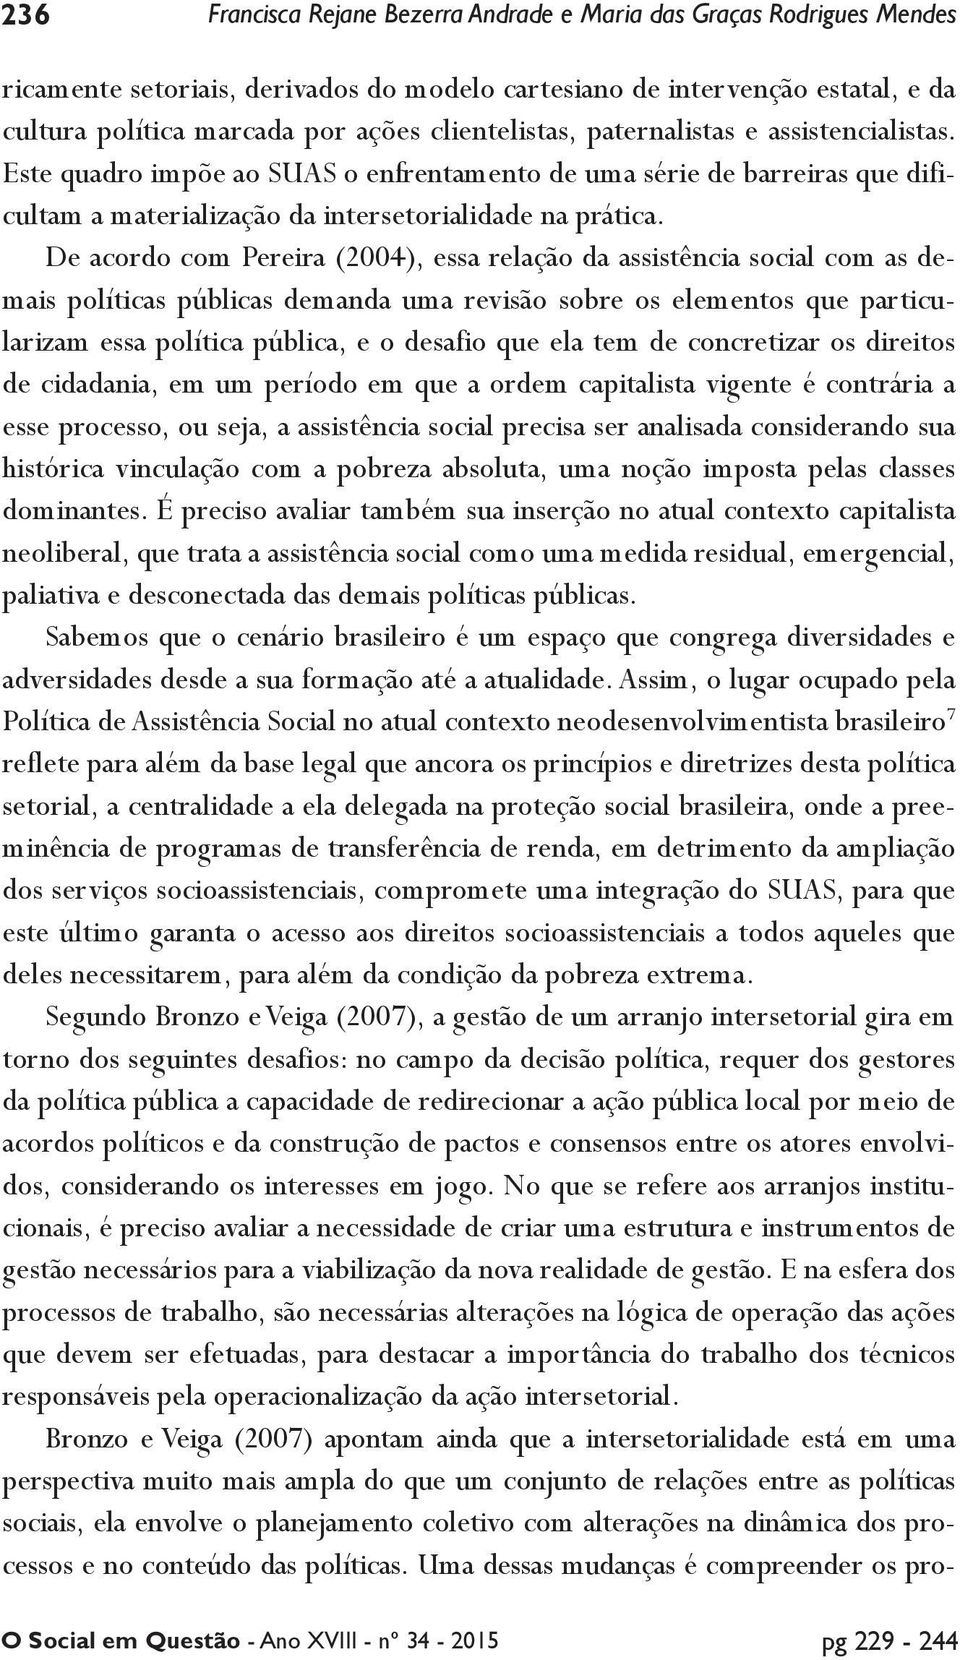 De acordo com Pereira (2004), essa relação da assistência social com as demais políticas públicas demanda uma revisão sobre os elementos que particularizam essa política pública, e o desafio que ela